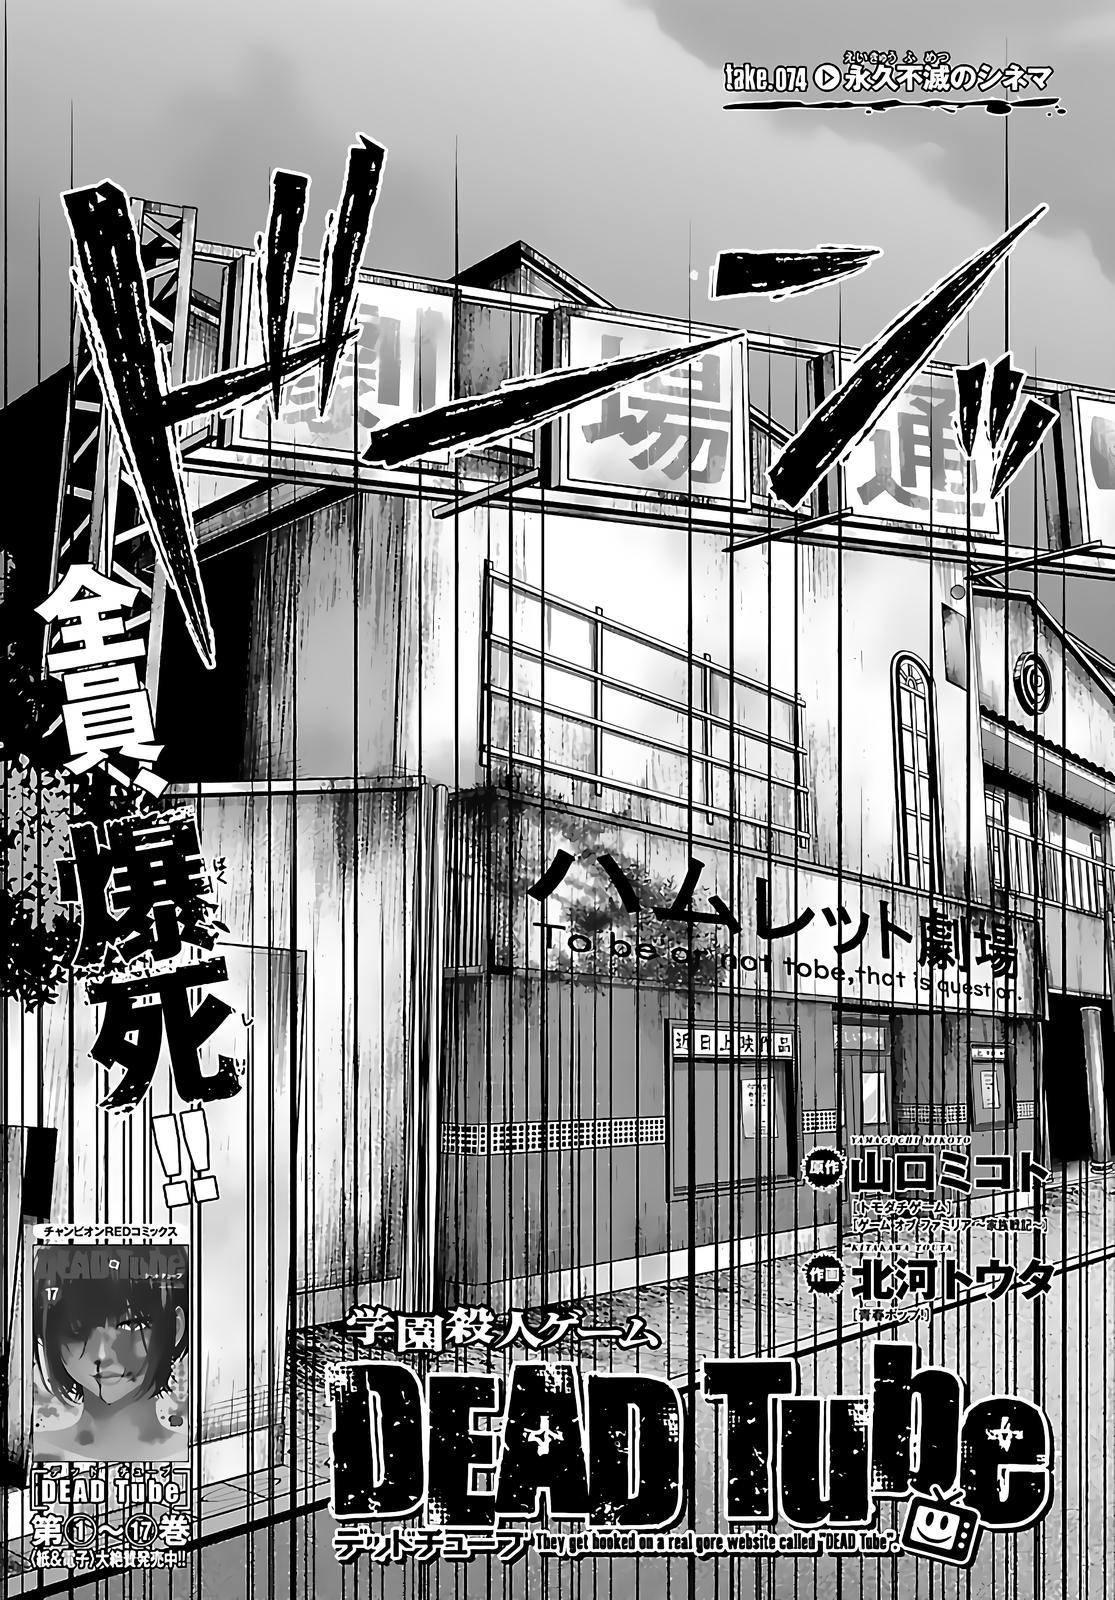 Read Dead Tube Chapter 74 on Mangakakalot